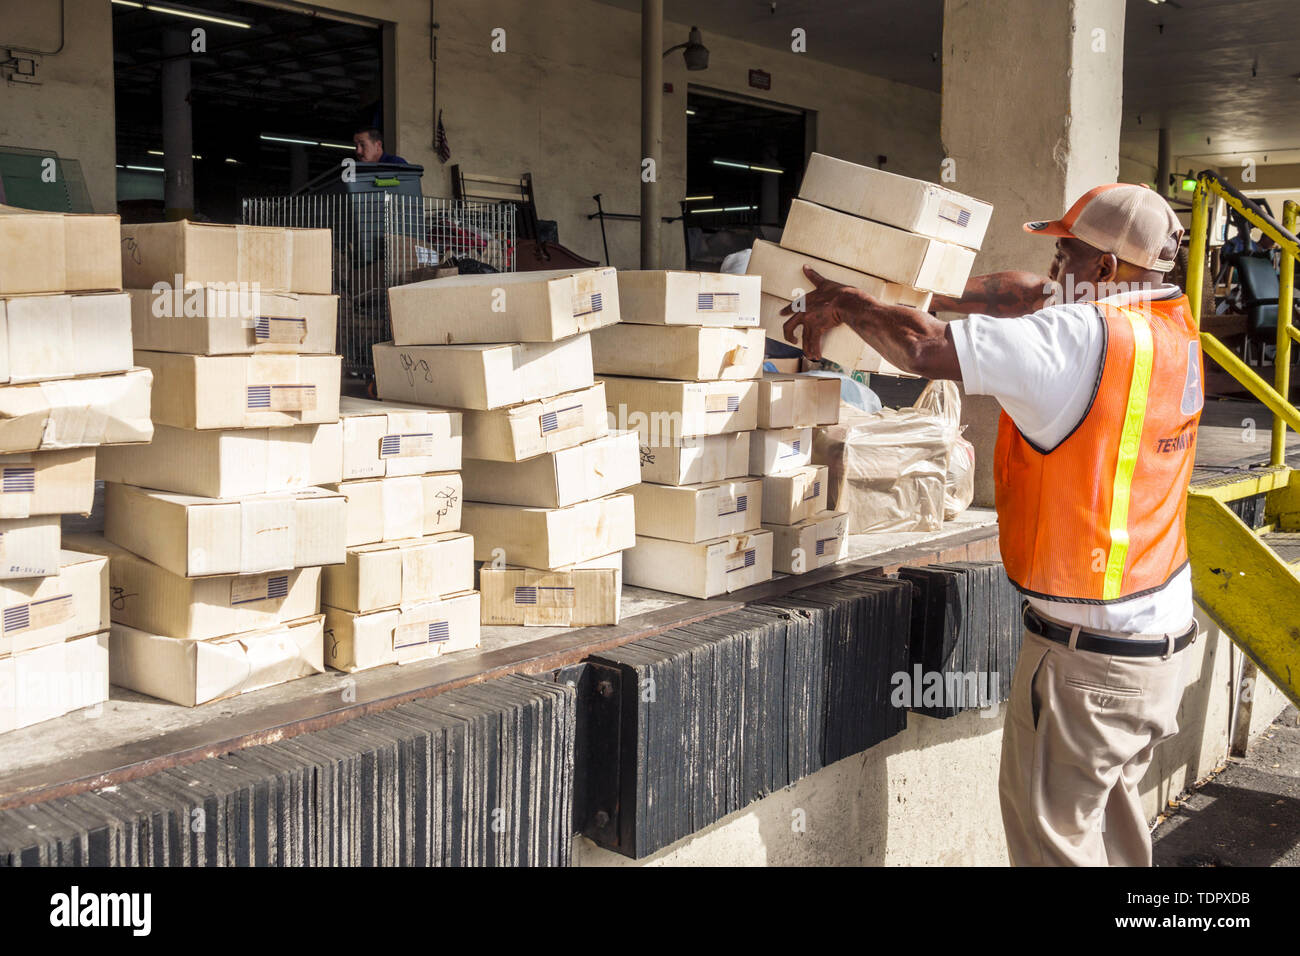 Miami Florida,Donaciones del Ejército de Salvación,hombres negros masculinos,cajuela de coche,cajas de apilamiento,recibiendo donaciones,trabajador,chaleco reflectante,muelle de carga,FL190104052 Foto de stock